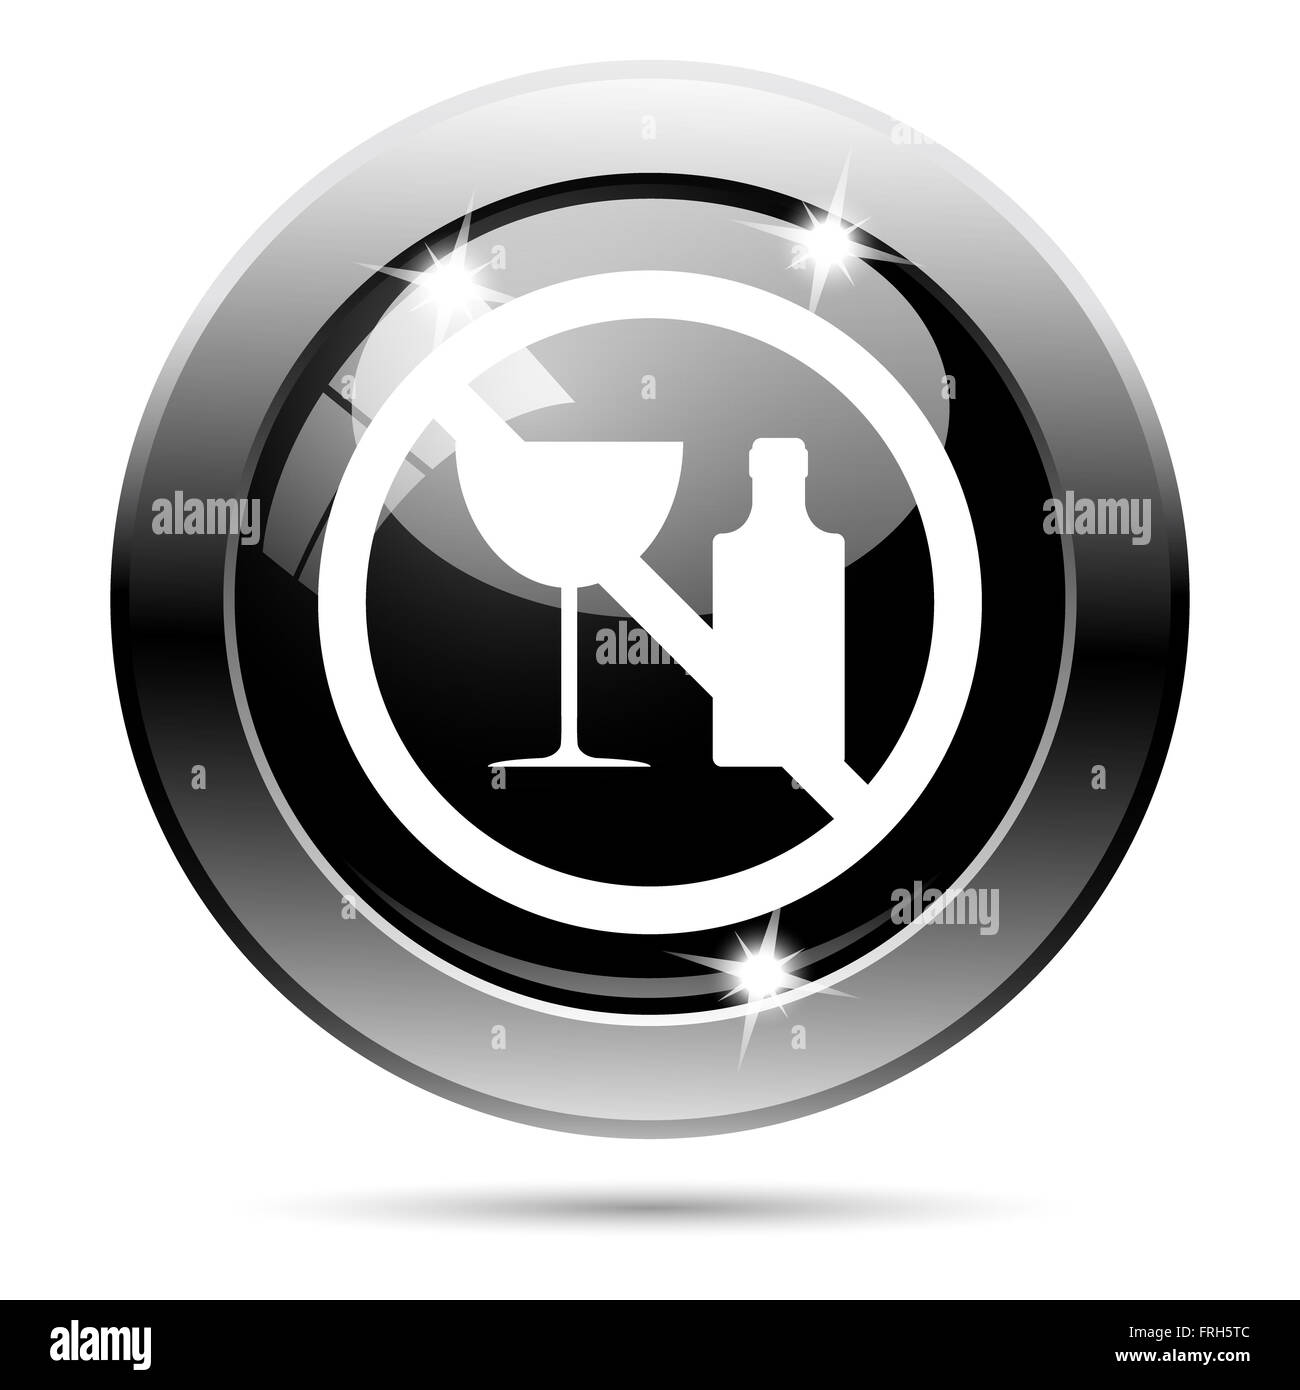 Metallic round glossy icon with white design on black background Stock Photo